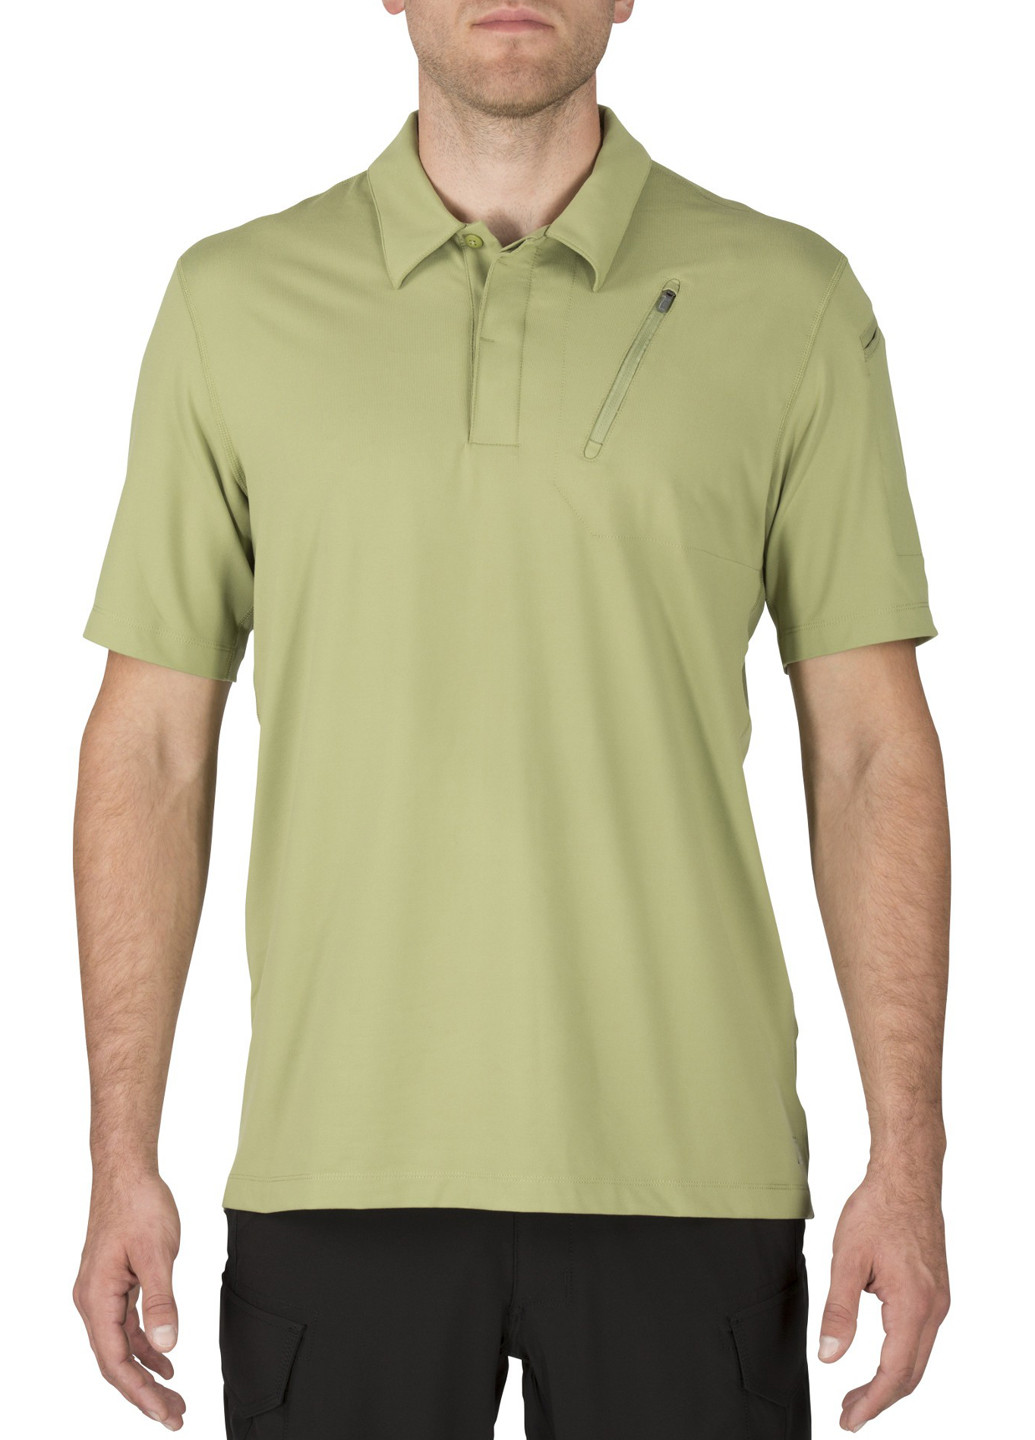 Оливково-зеленая футболка-поло для мужчин 5.11 однотонная